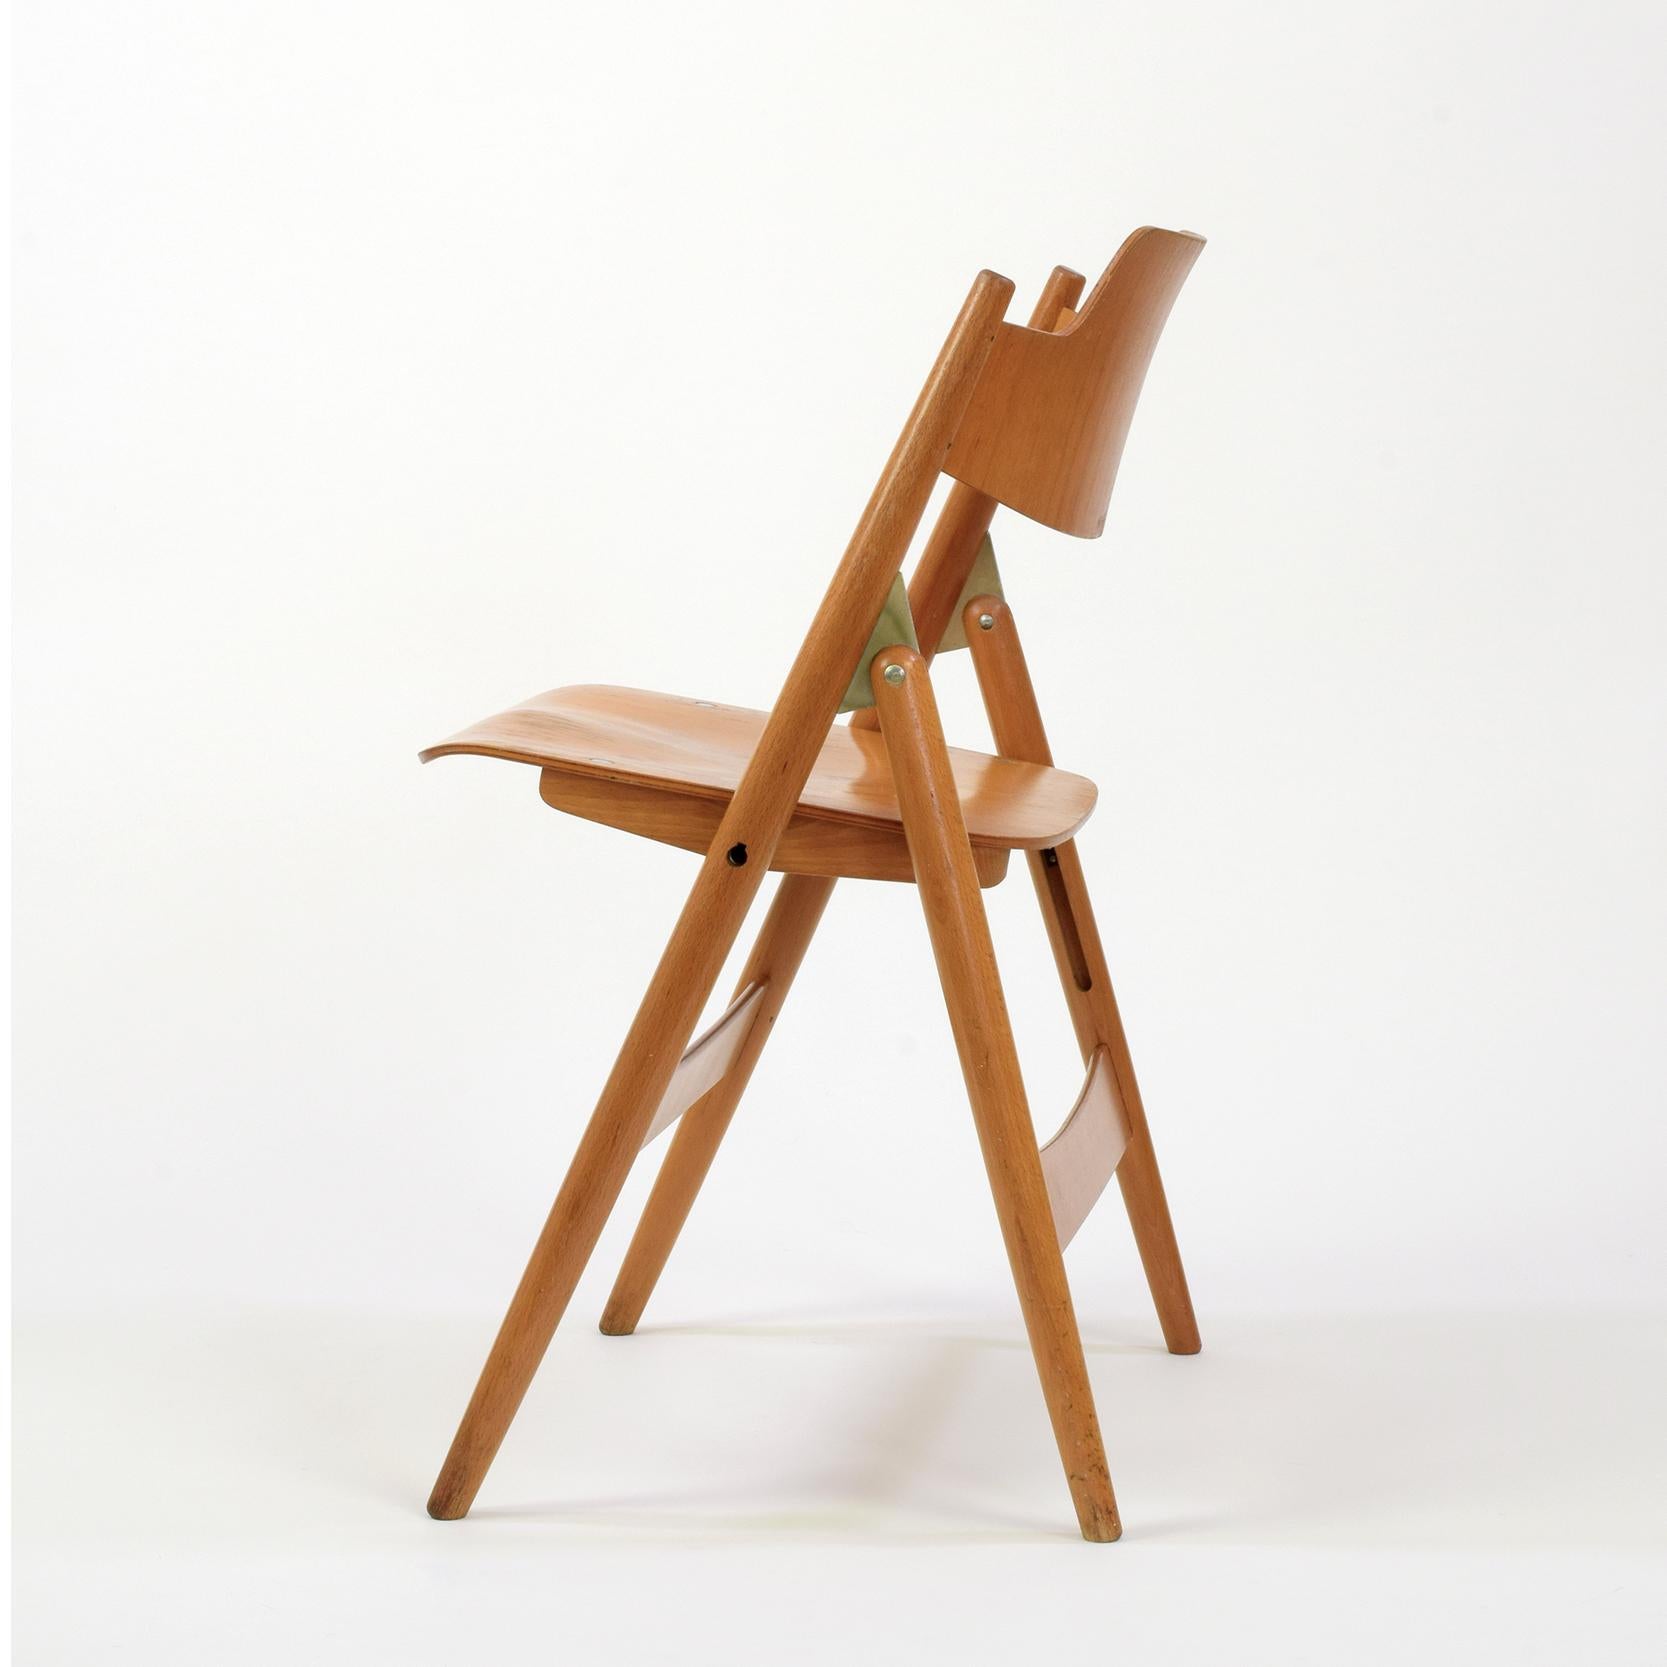 Molded Egon Eiermann, Folding Chair Model SE 18, for Wilde + Spieth, Designed 1952 For Sale